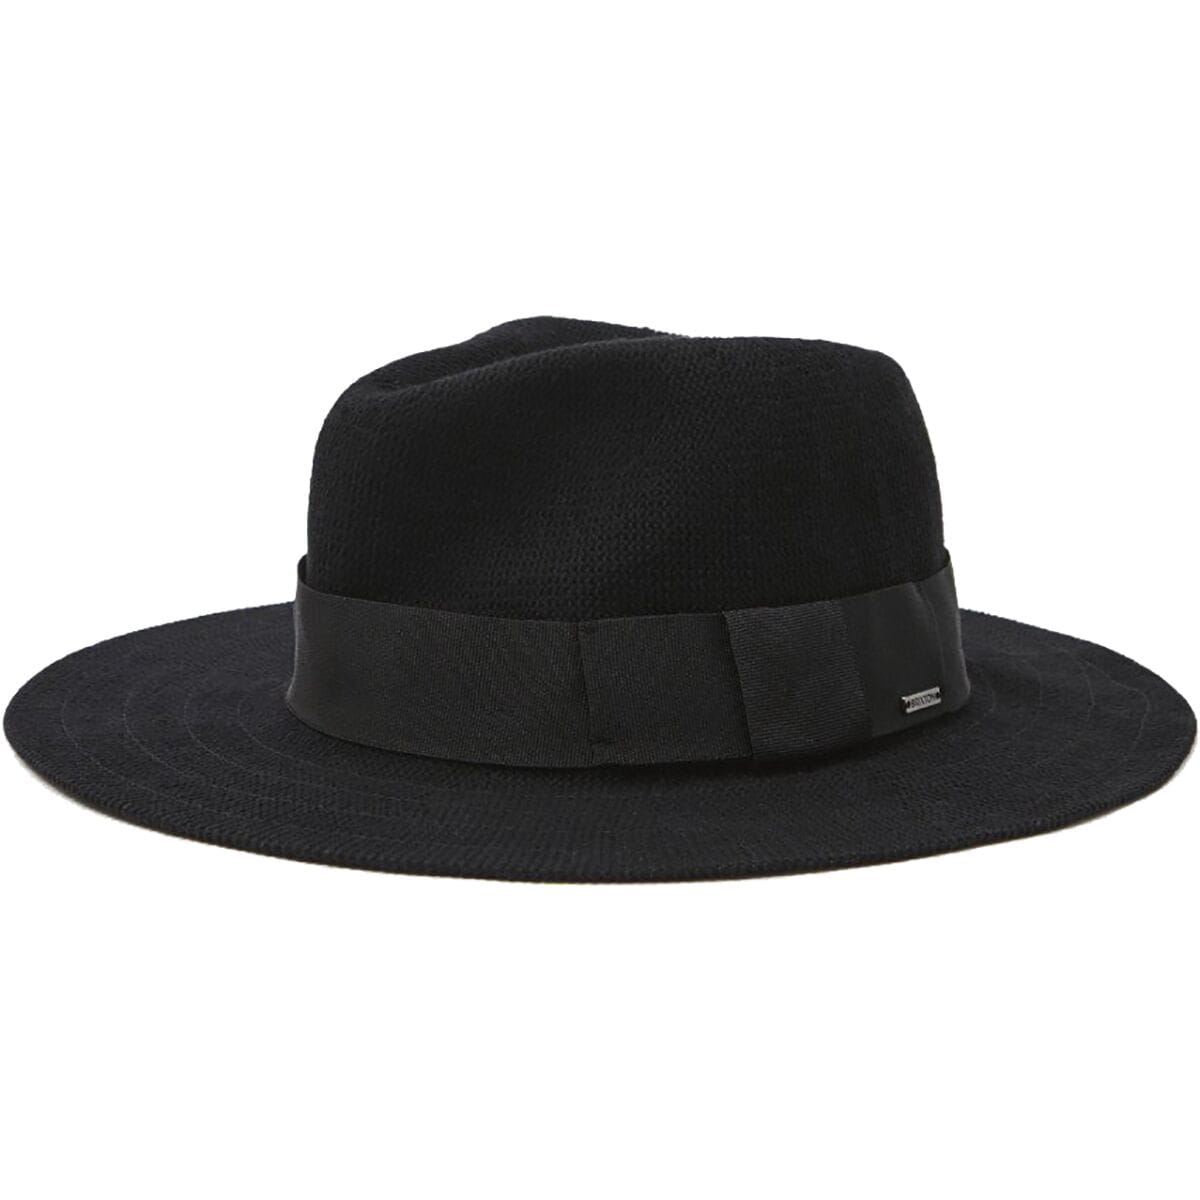 Brixton Joanna Knit Packable Hat - Men